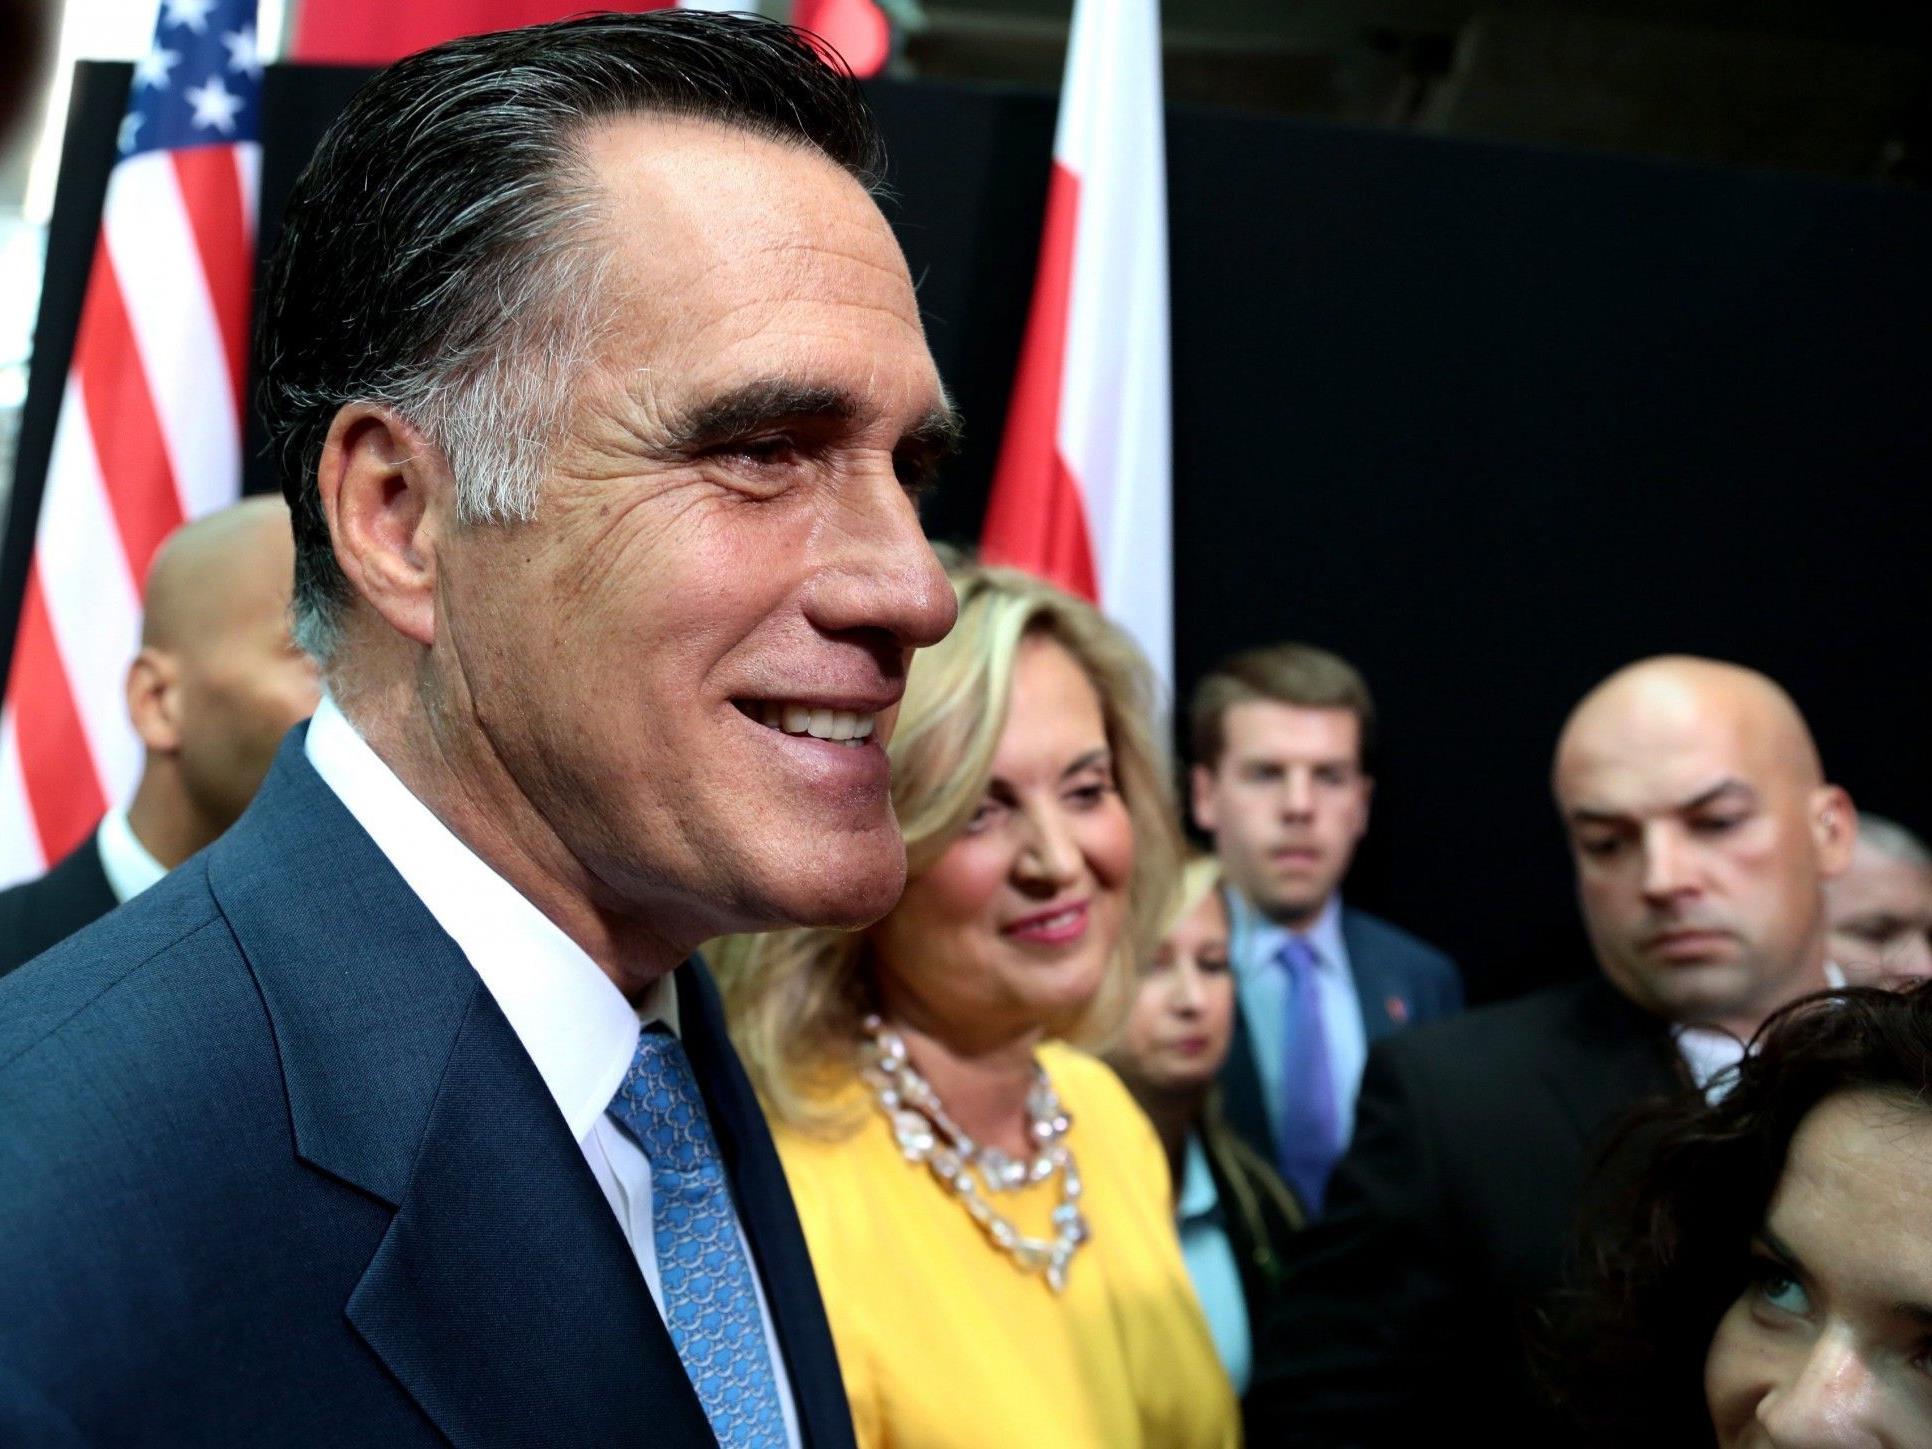 Romney lehnt eine Veröffentlichung seiner Steuerunterlagen bislang vehement ab.